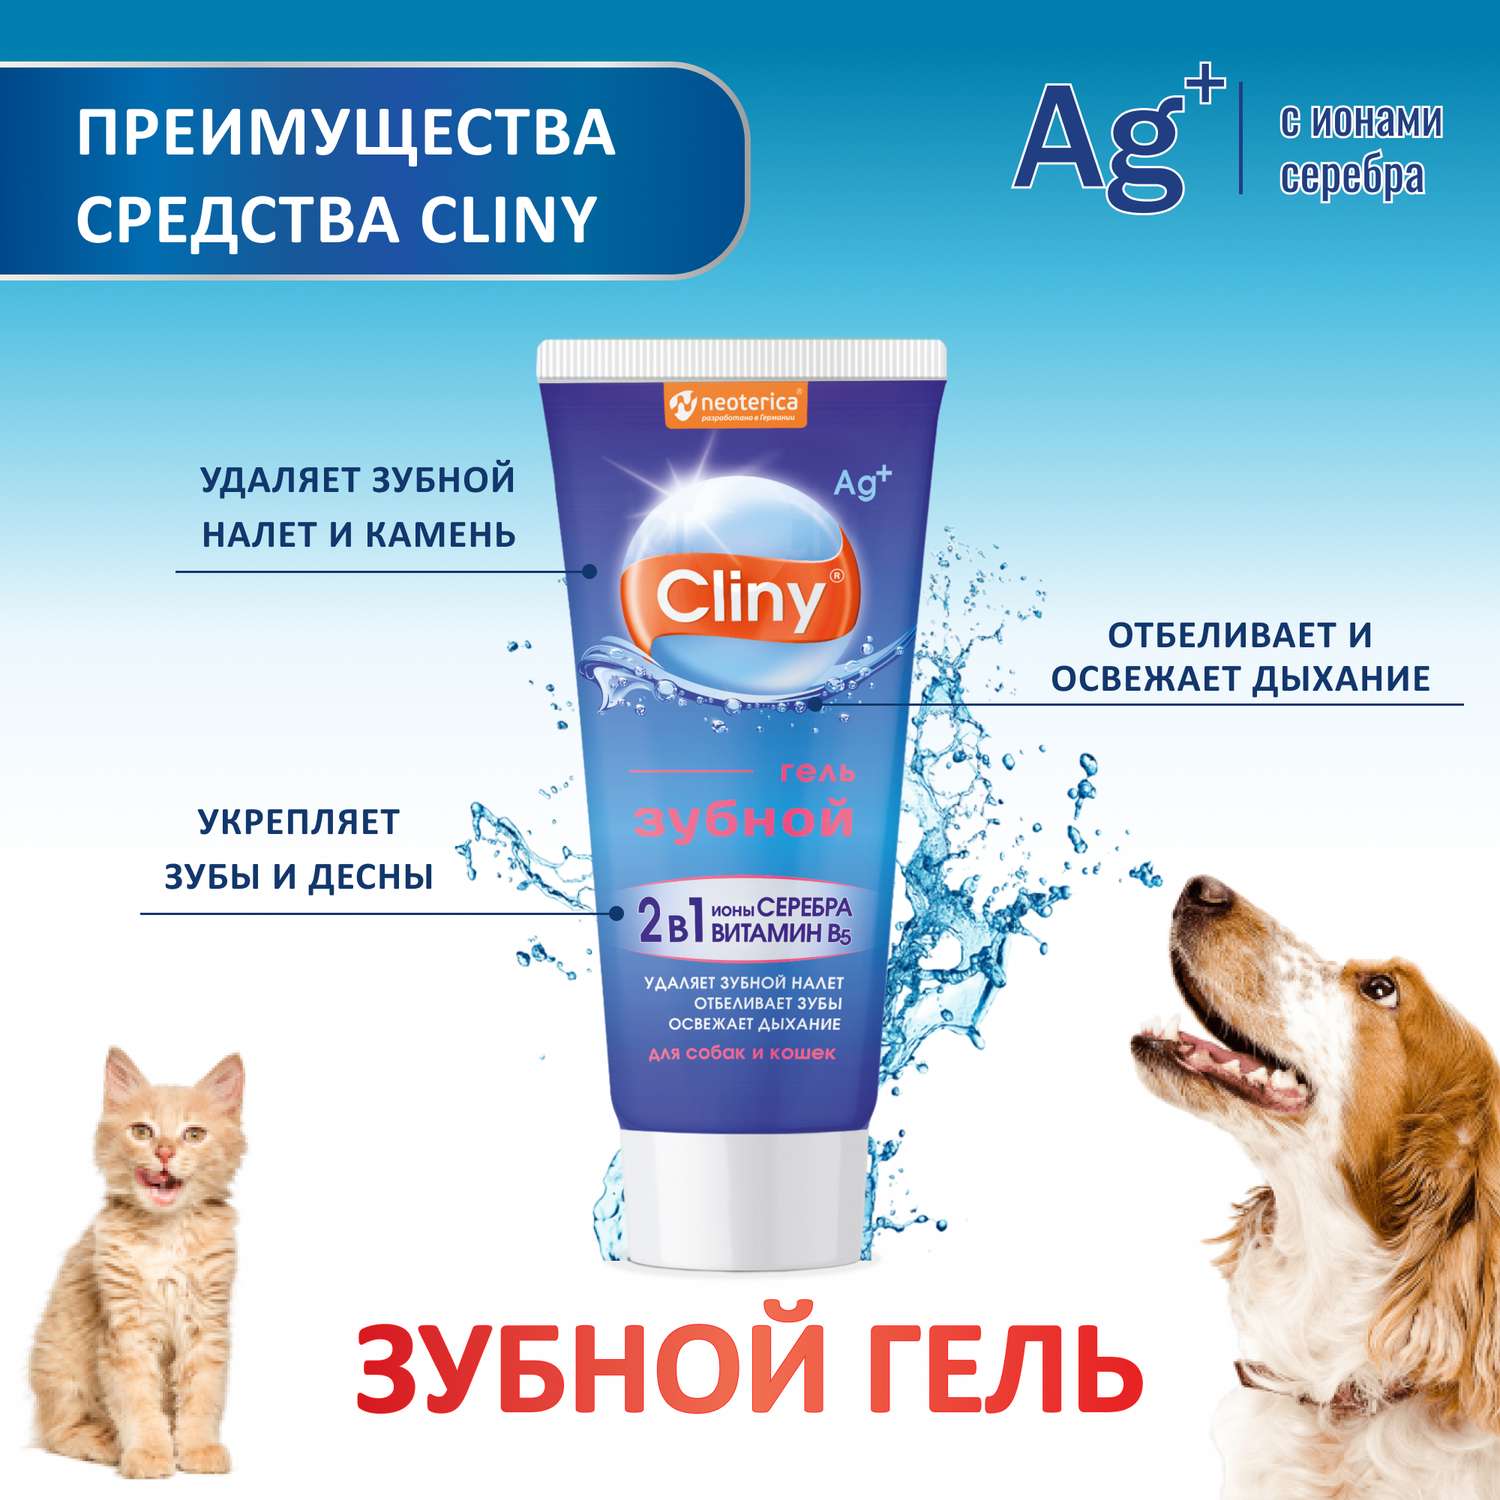 Гель зубной гель для кошек и собак Cliny 75мл 53260 - фото 7